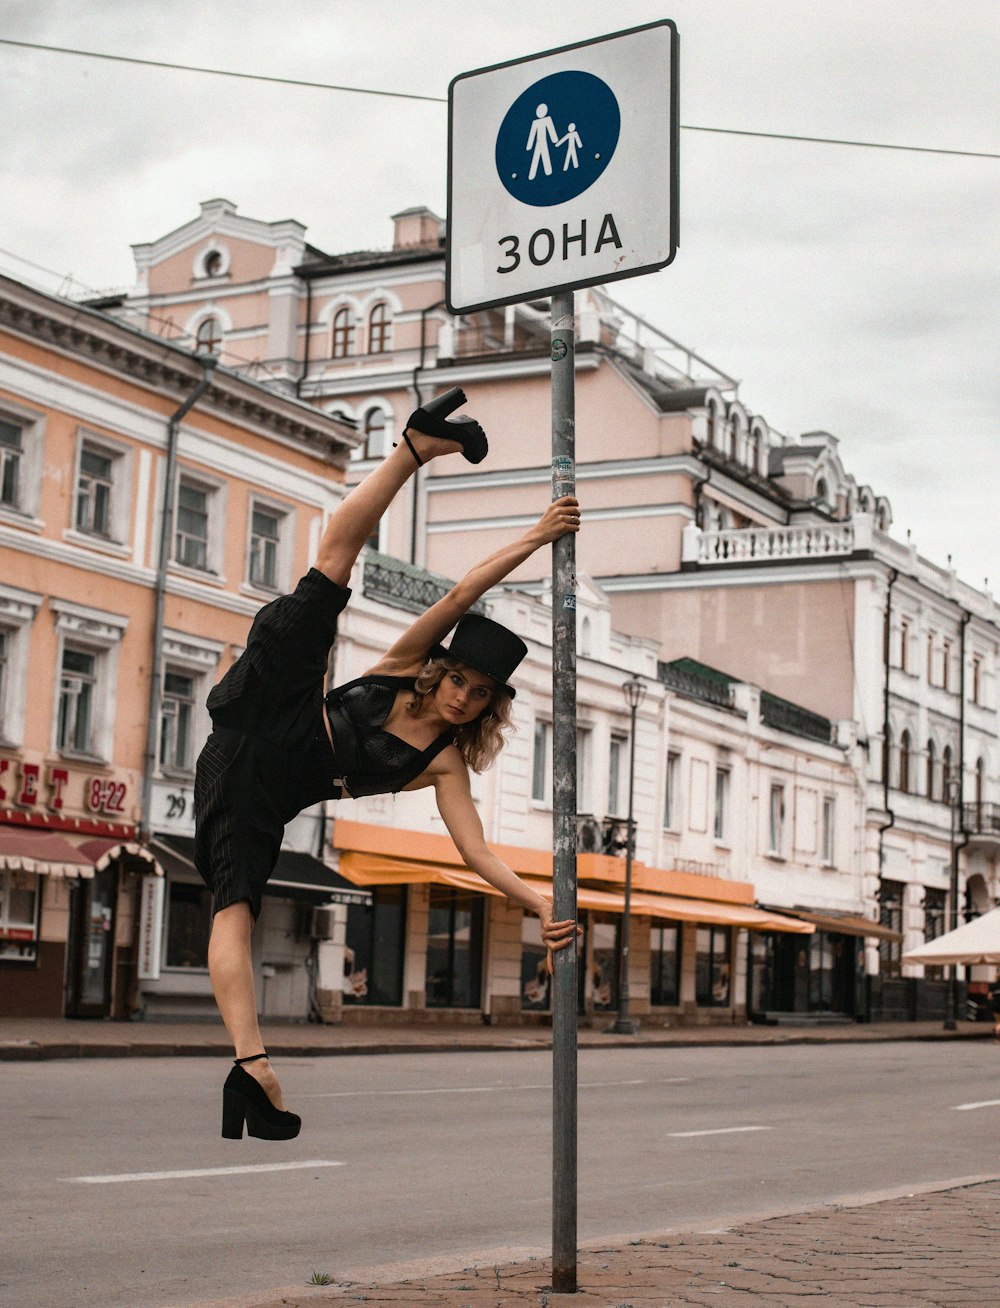 Eine Frau macht einen Handstand auf einem Straßenschild